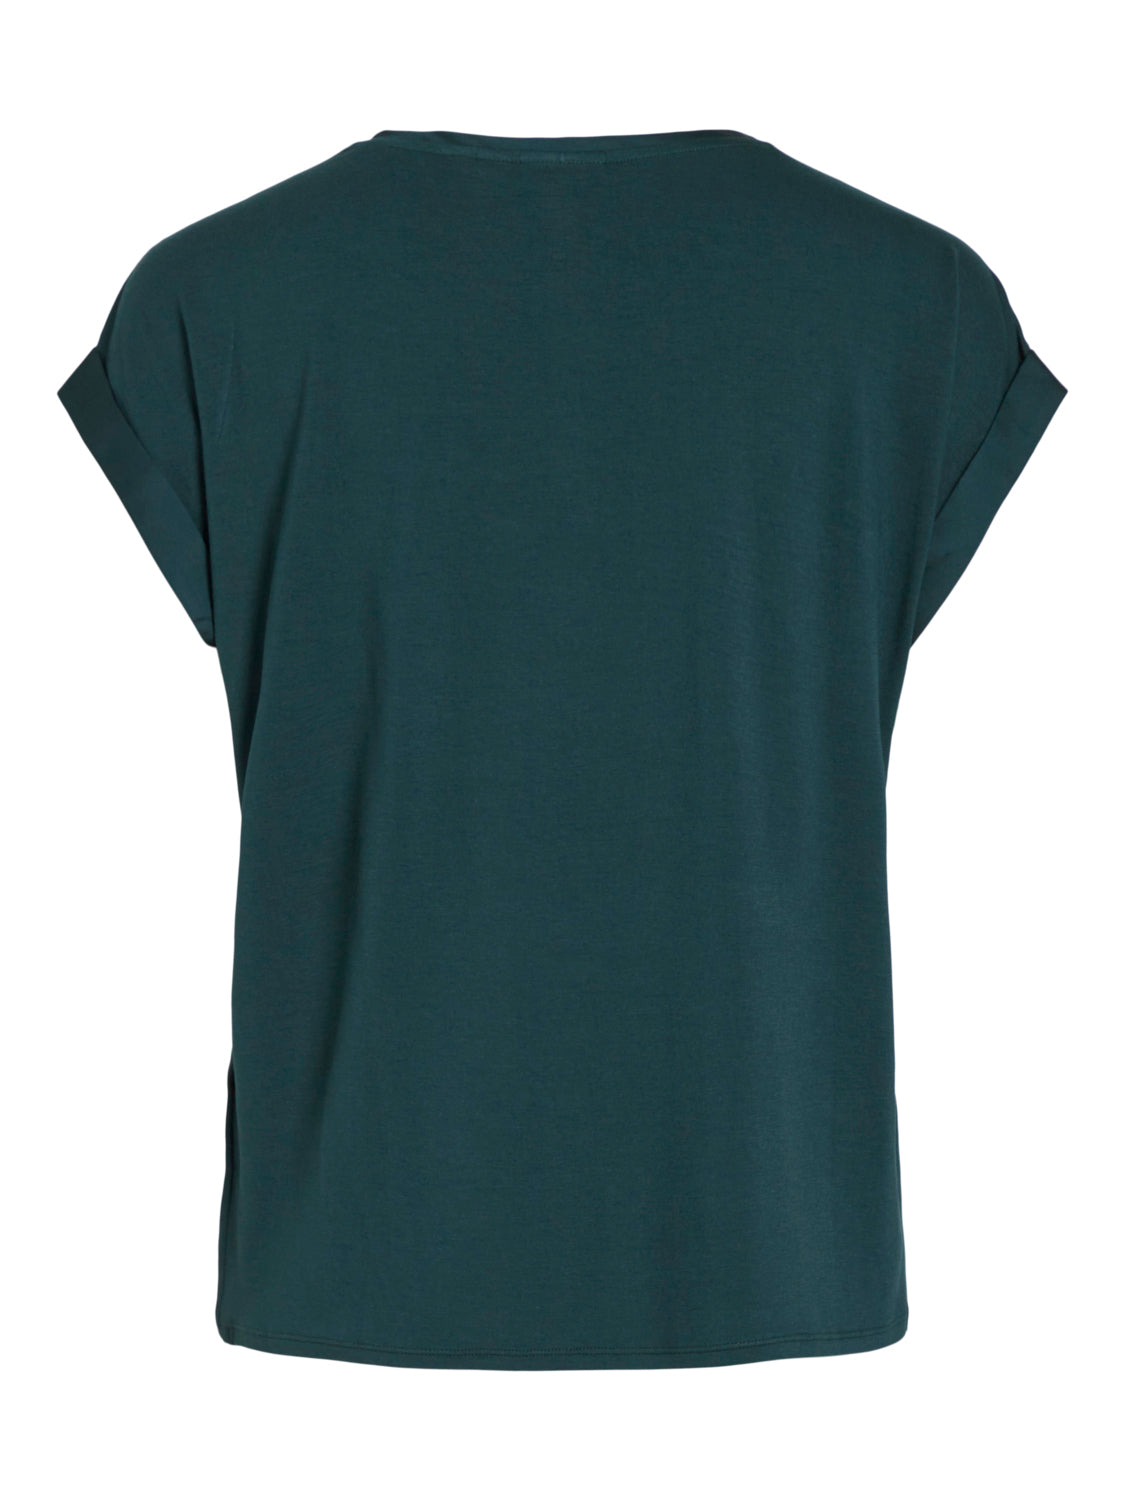 VIELLETTE T-Shirts & Tops - Ponderosa Pine